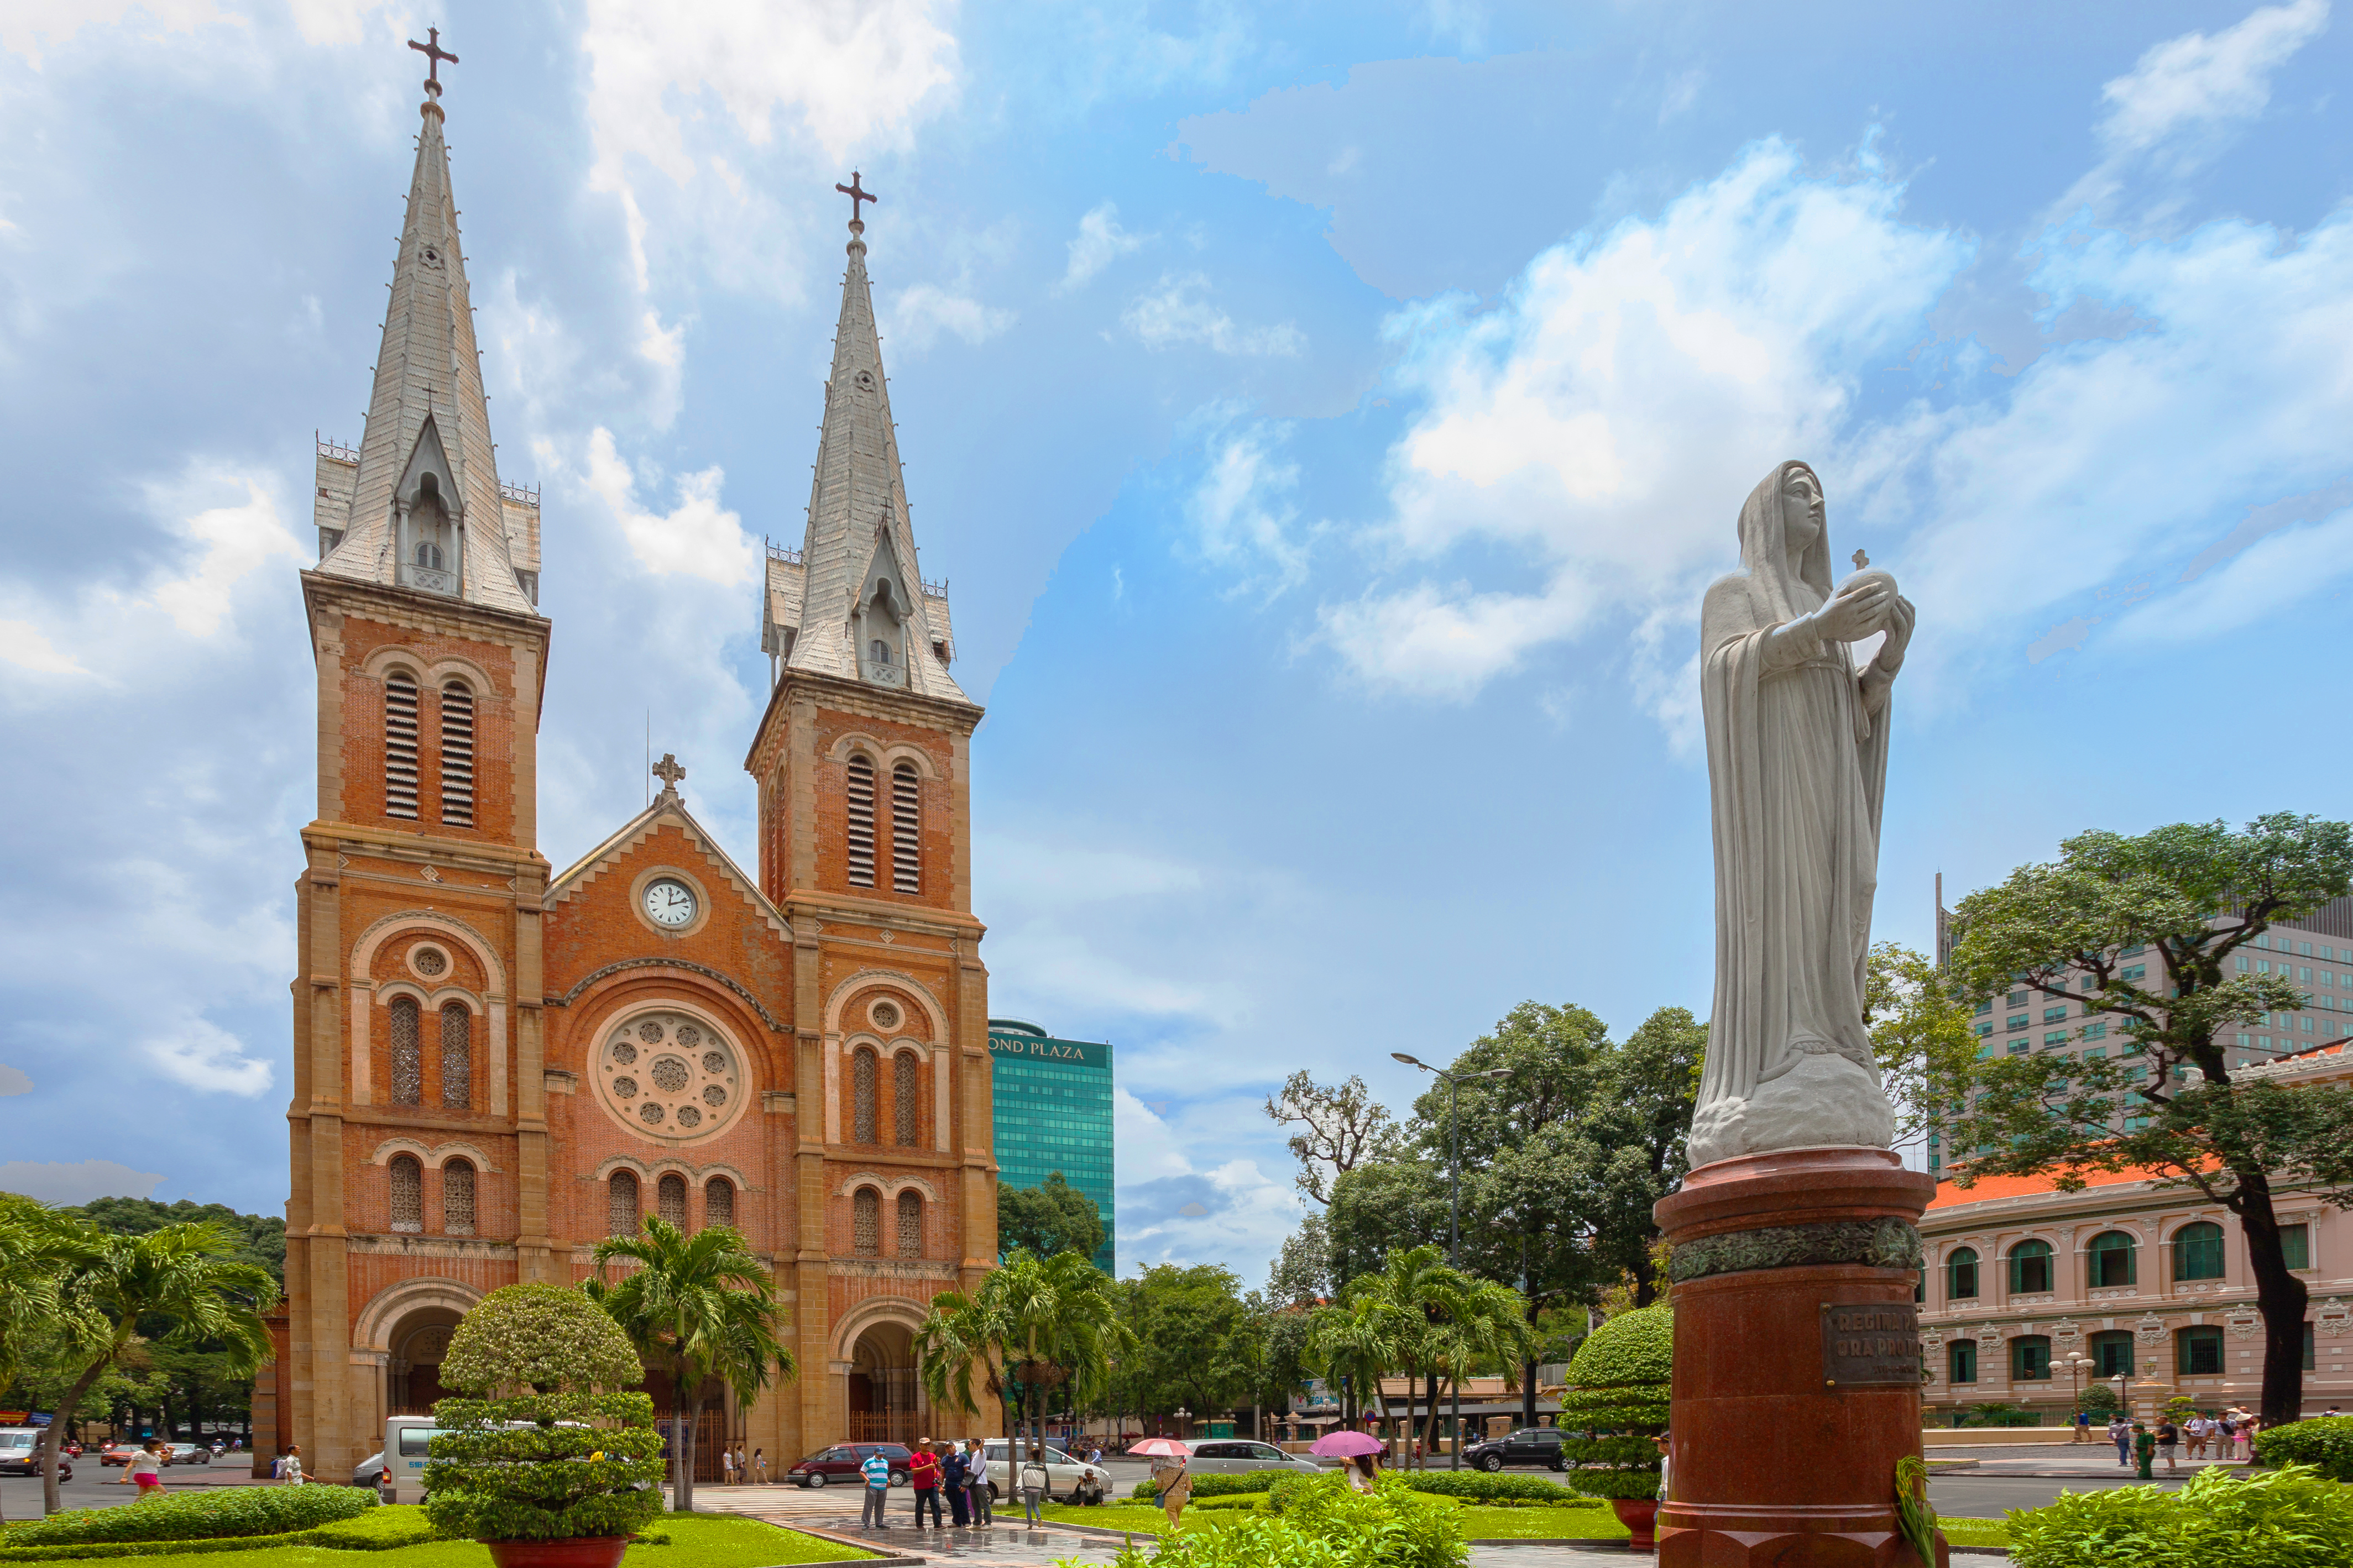 Nhà thờ Đức Bà - Saigon Notre Dame Cathedral | Yeudulich